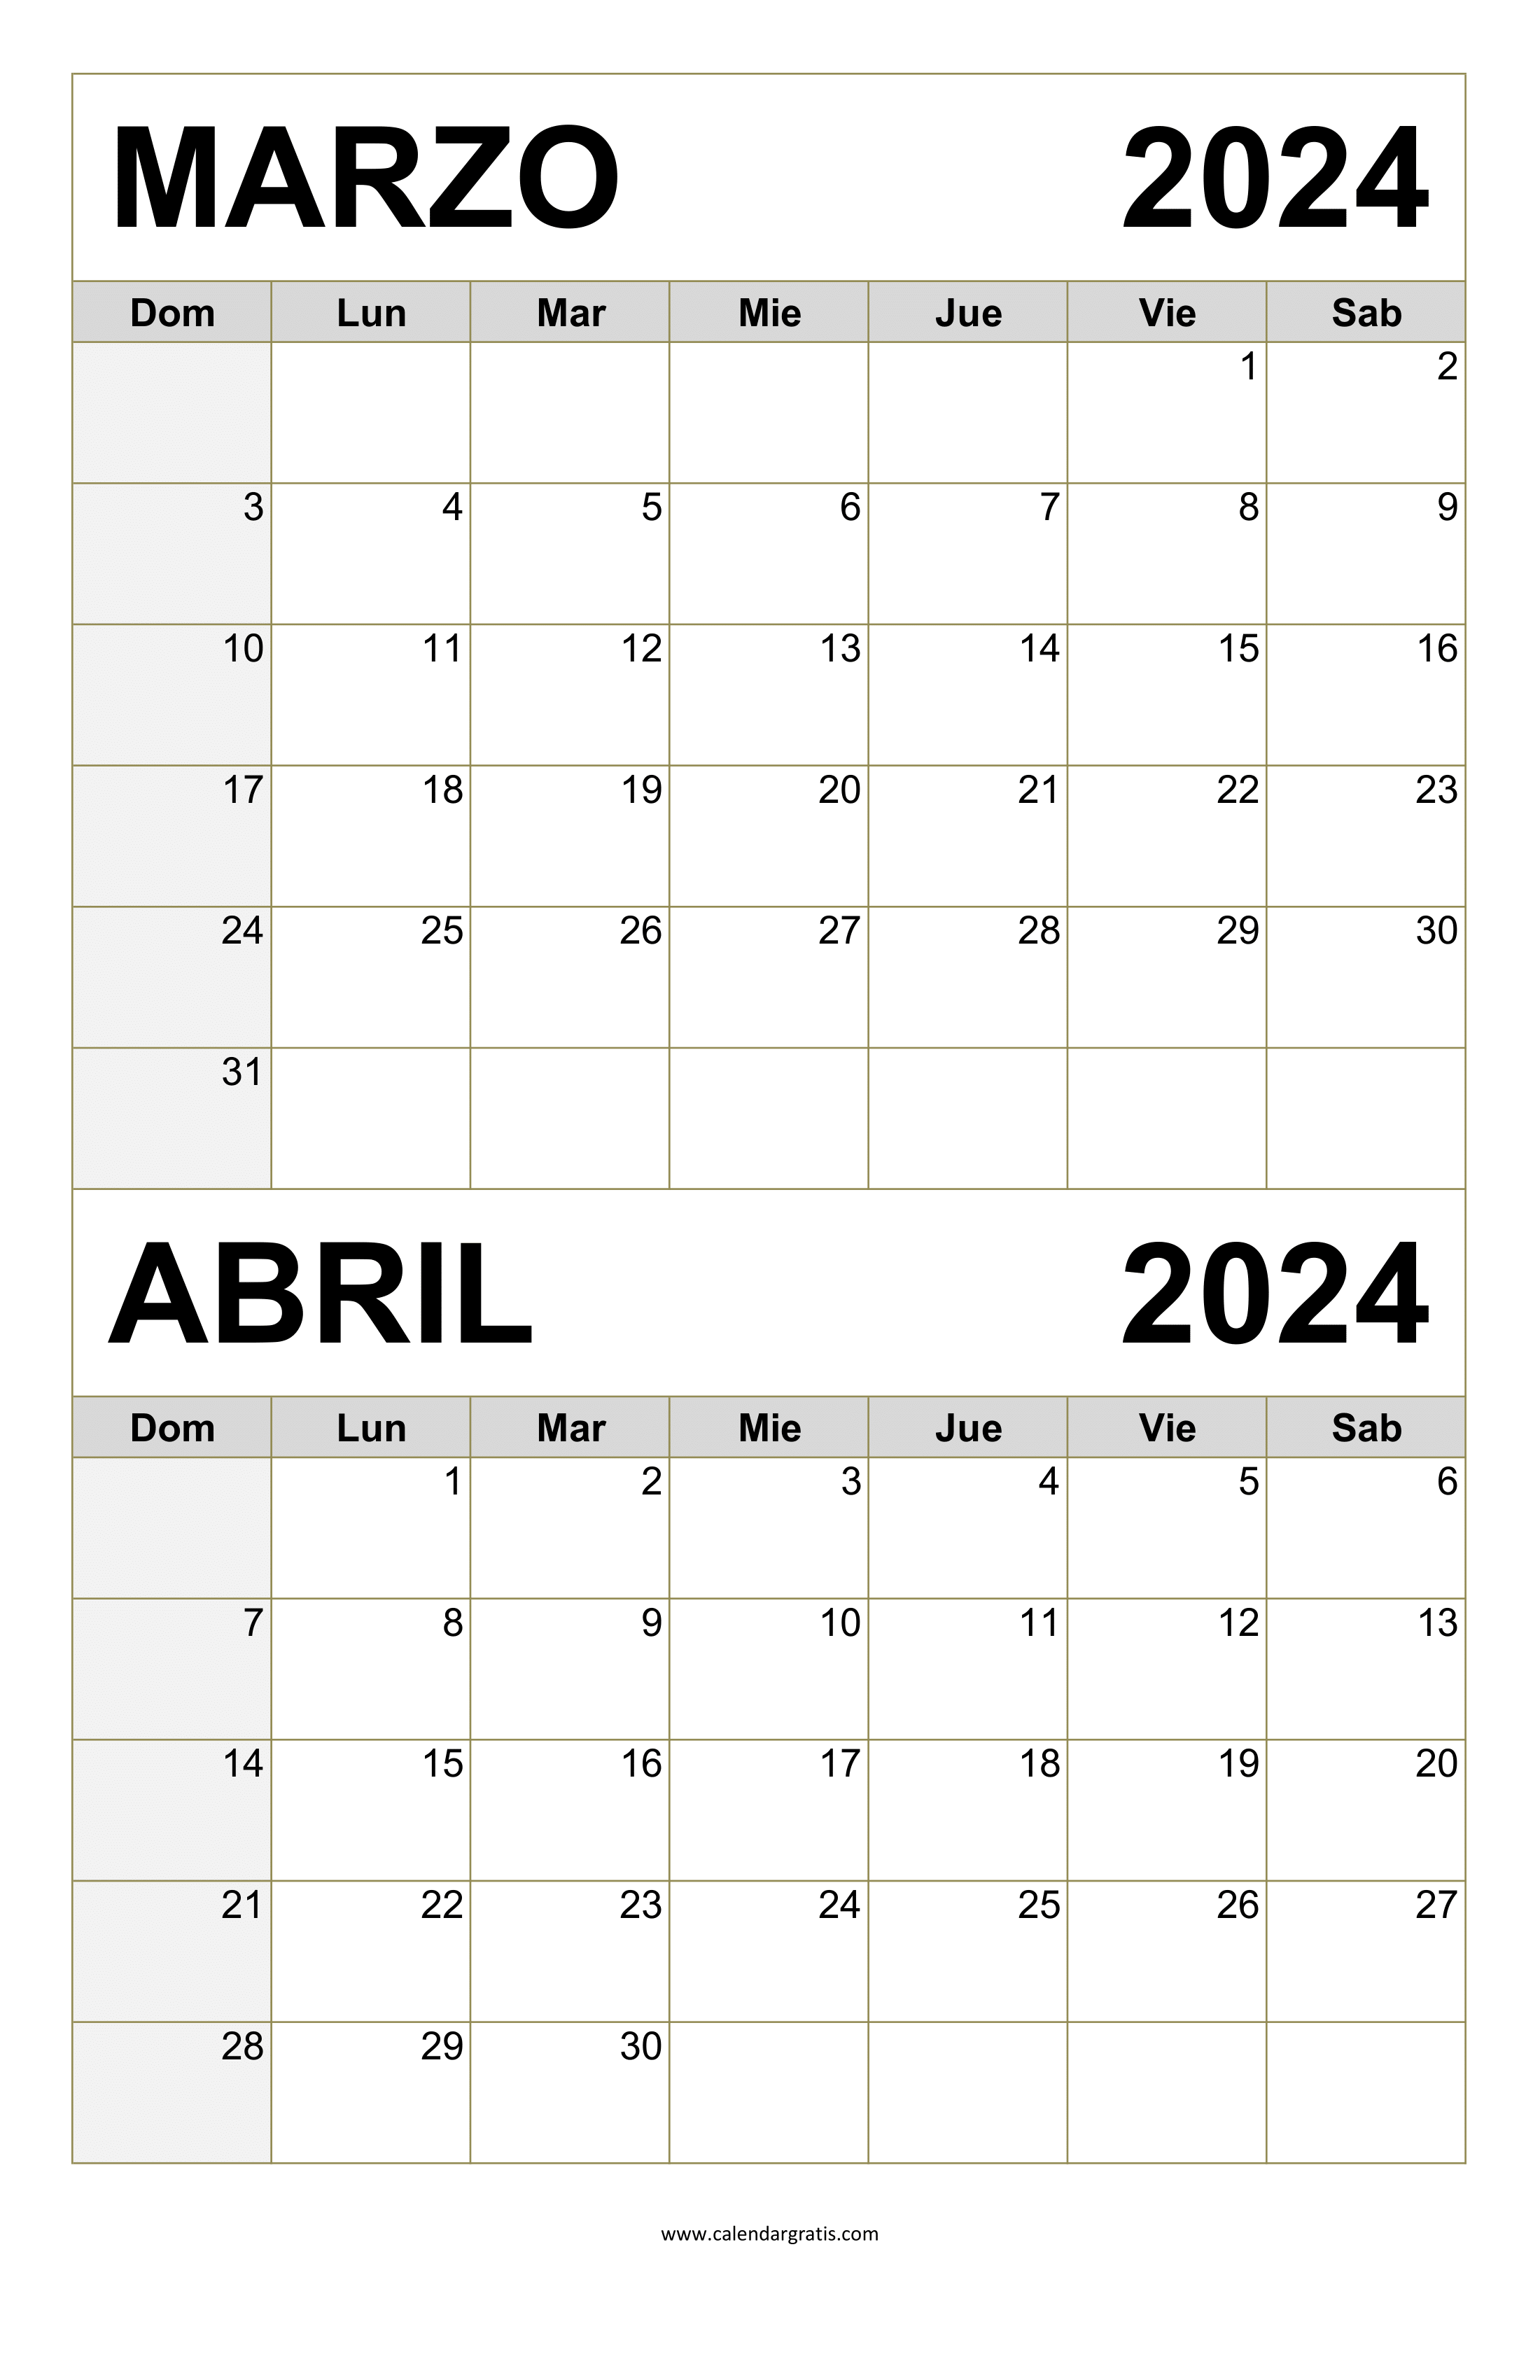 Calendario Marzo y Abril 2024